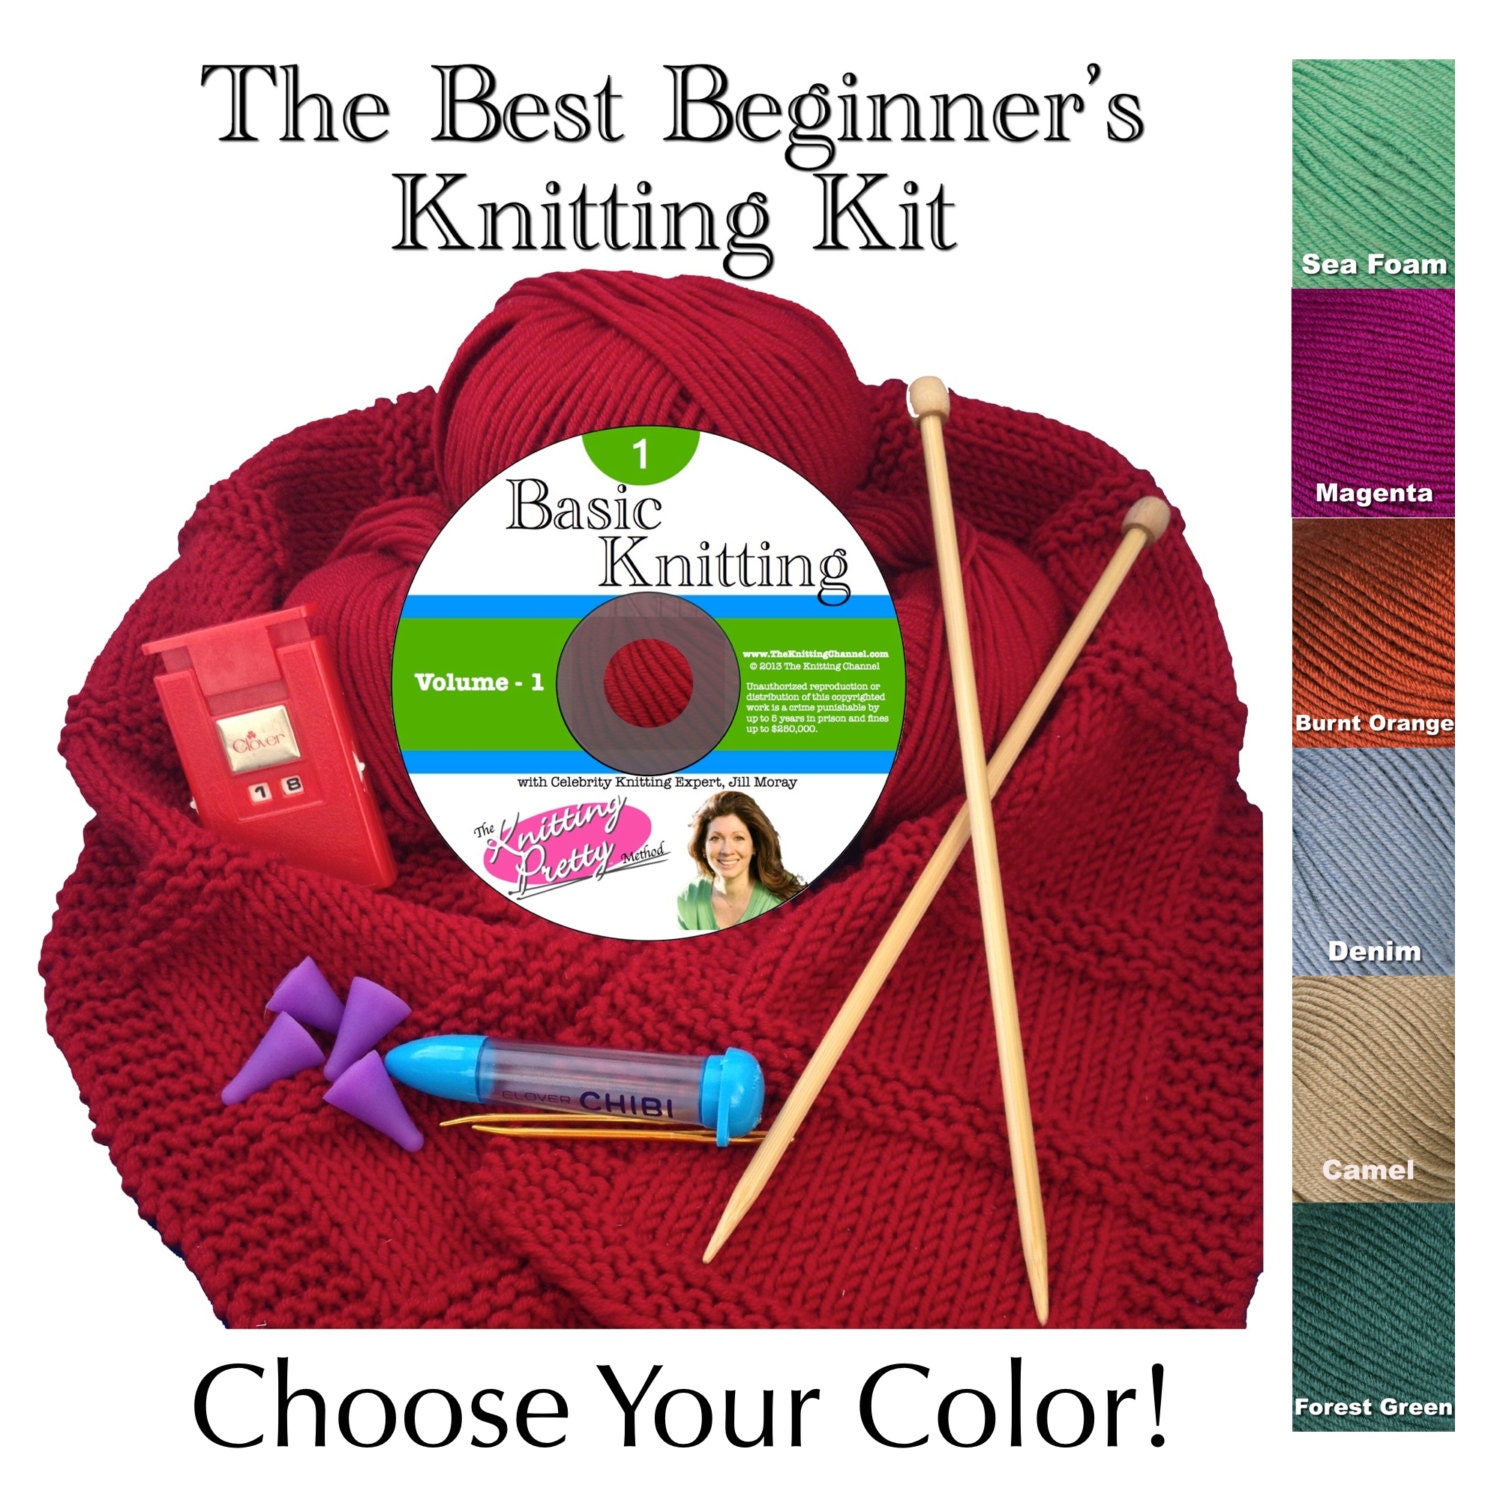 The Best Beginner's Knitting Kit